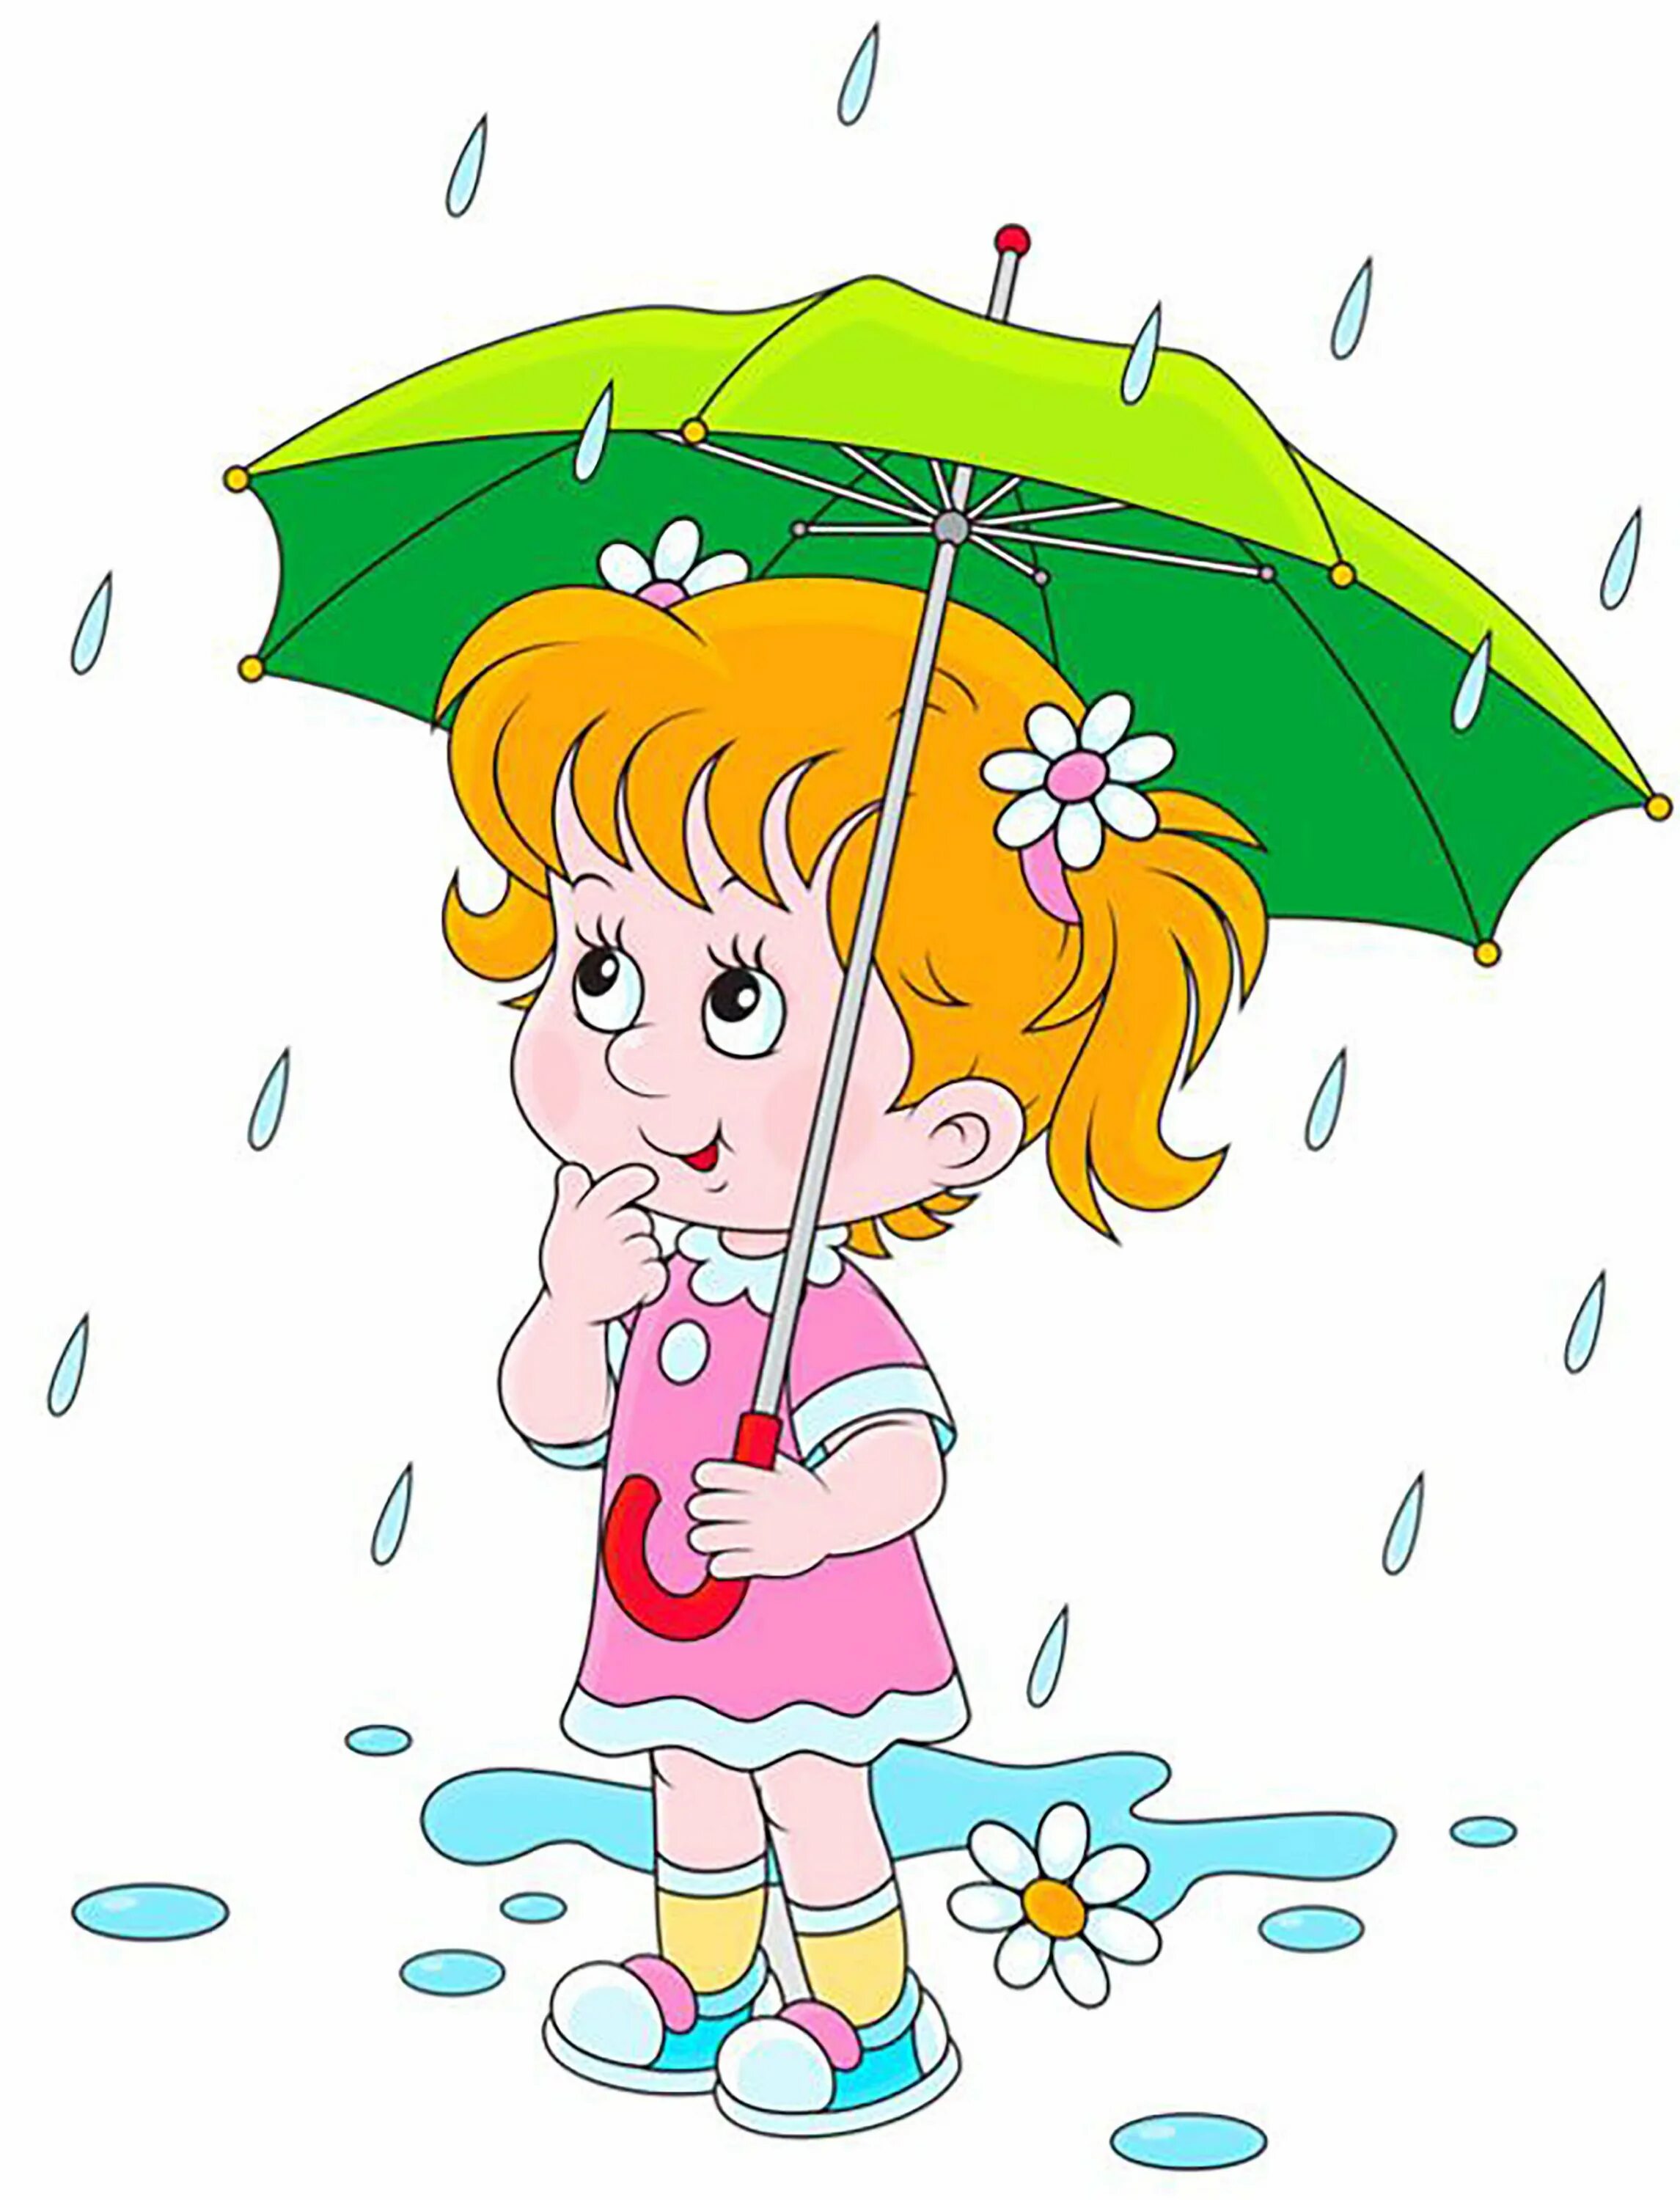 Дождик картинки для детей. Дождь картинка для детей. Девочка с зонтиком. Дождик картинка для детей. Зонтик для детей.